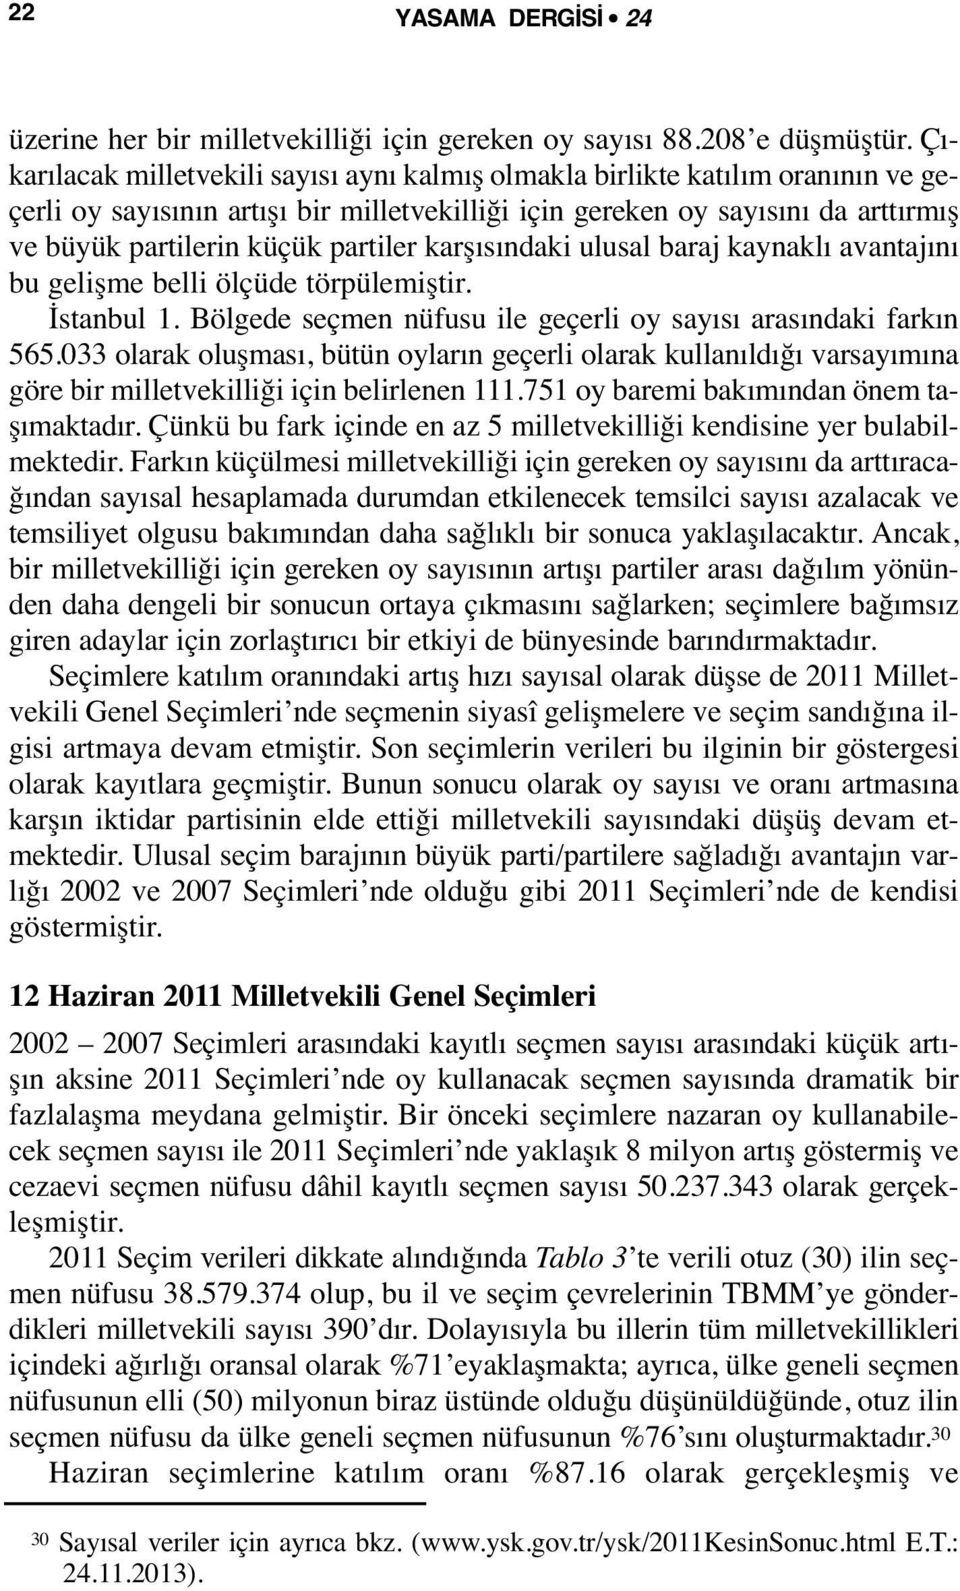 partiler karşısındaki ulusal baraj kaynaklı avantajını bu gelişme belli ölçüde törpülemiştir. İstanbul 1. Bölgede seçmen nüfusu ile geçerli oy sayısı arasındaki farkın 565.